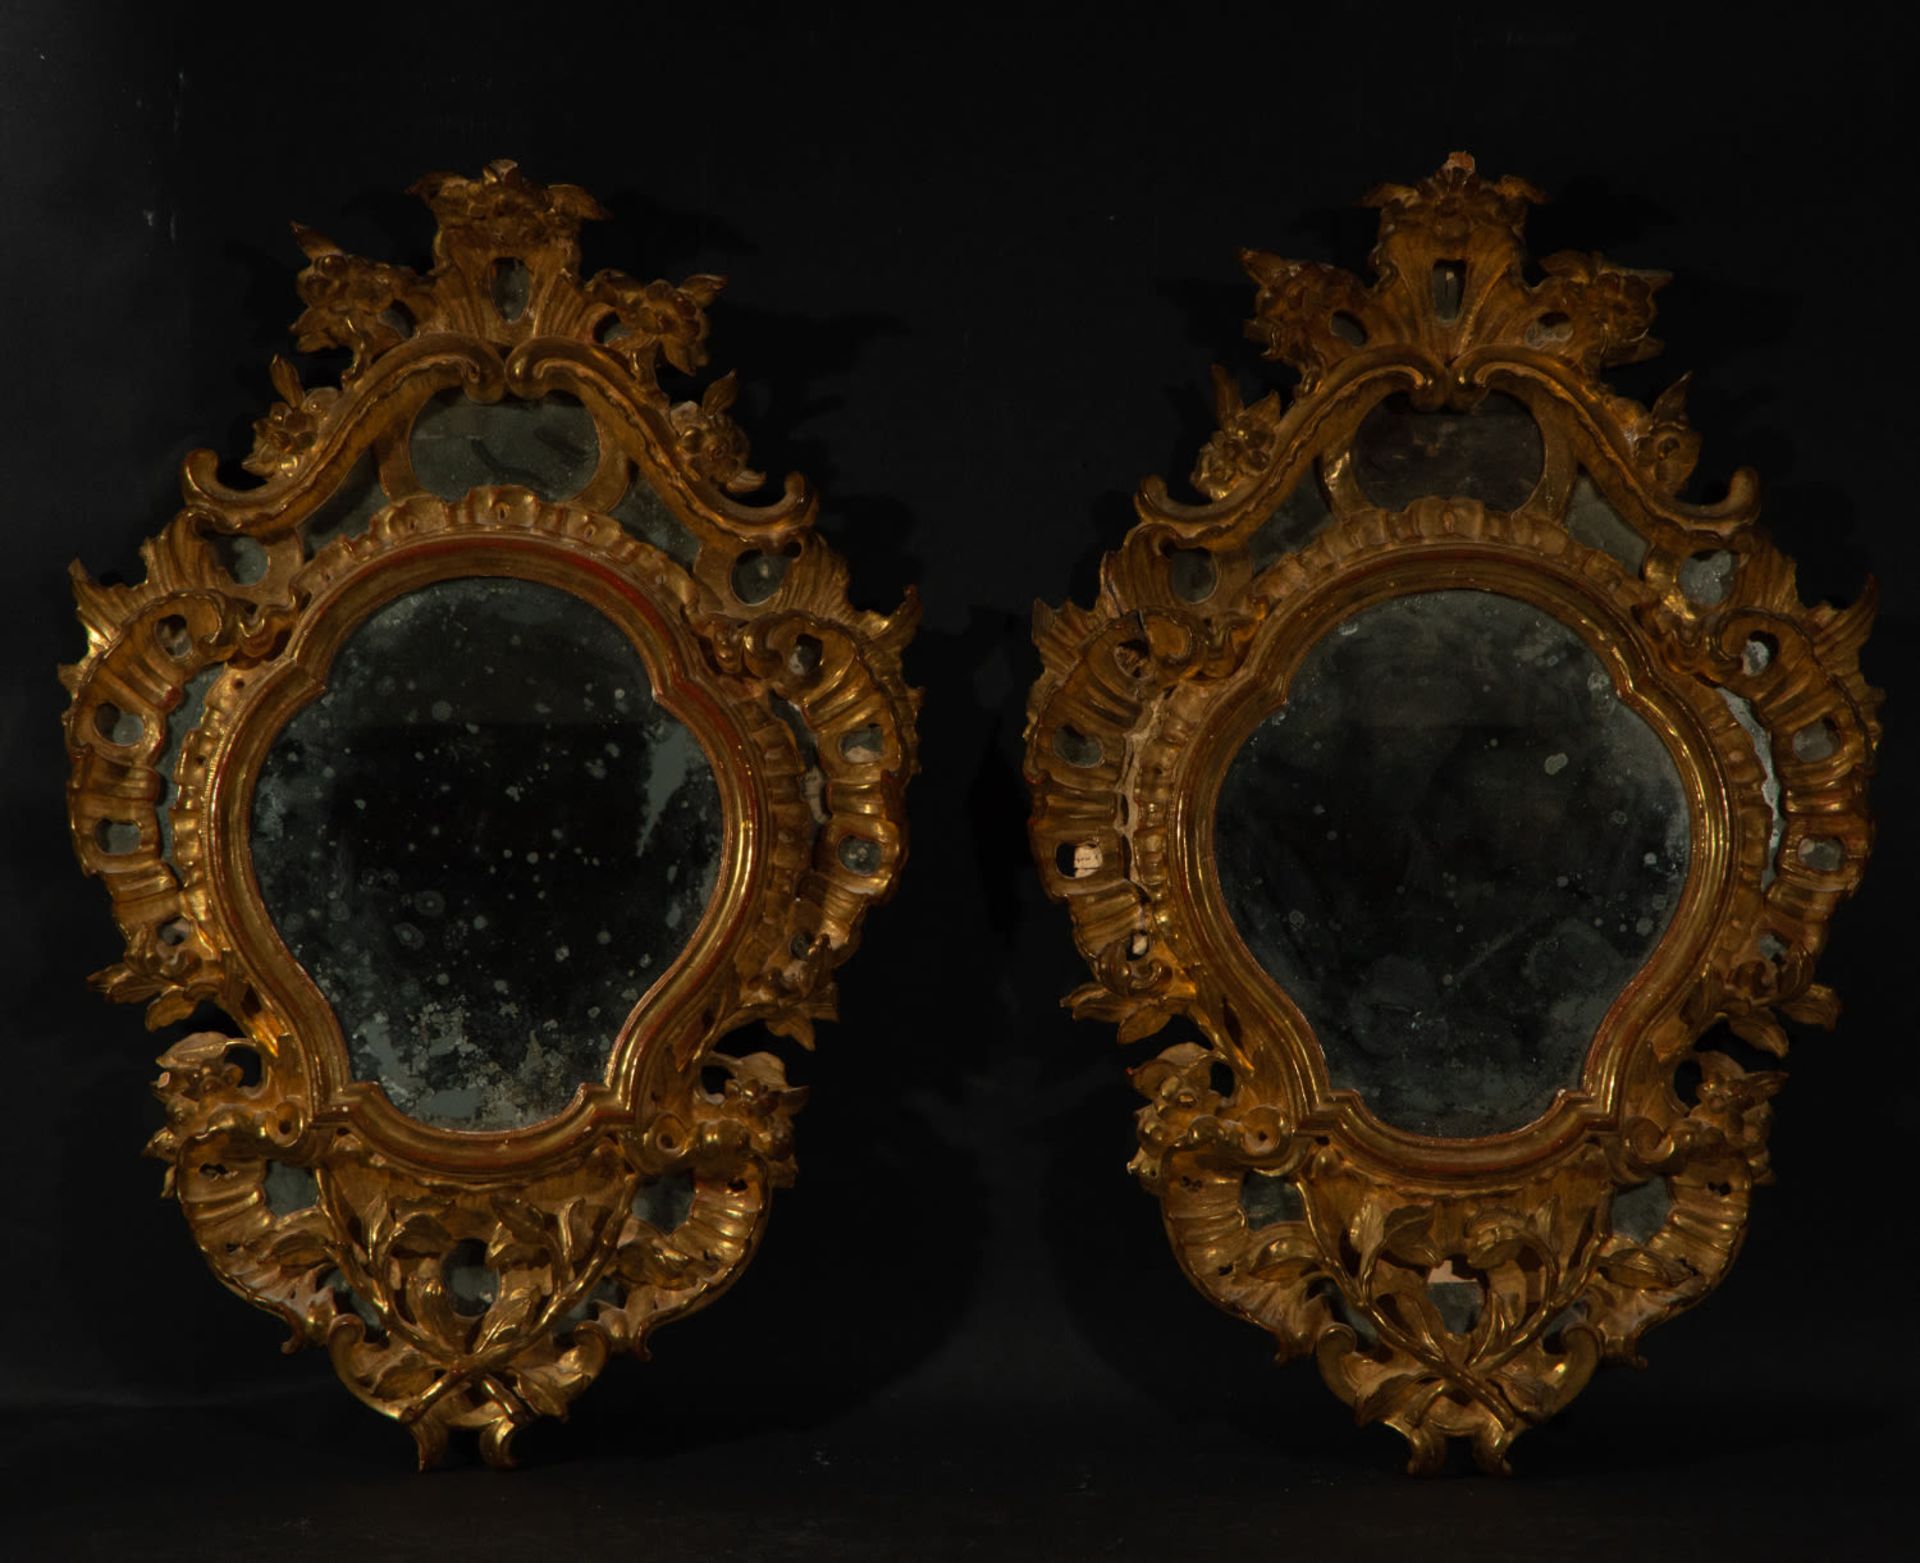 Spectacular pair of Venetian Cornucopias, 18th century